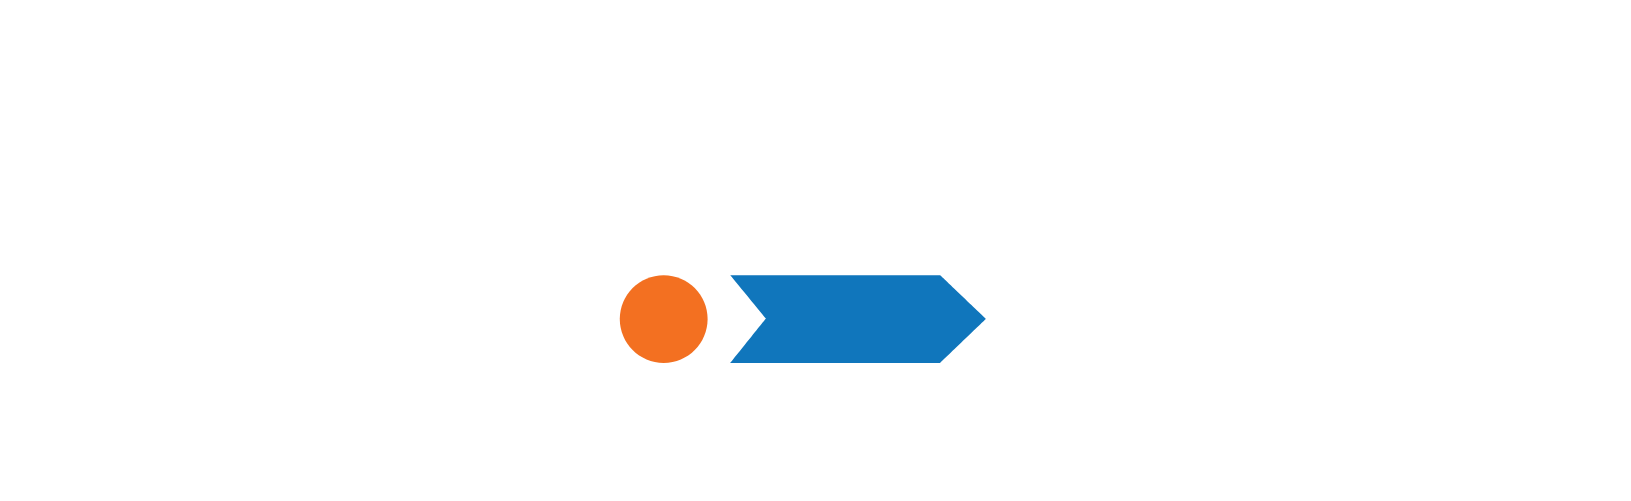 Akero Therapeutics logo grand pour les fonds sombres (PNG transparent)